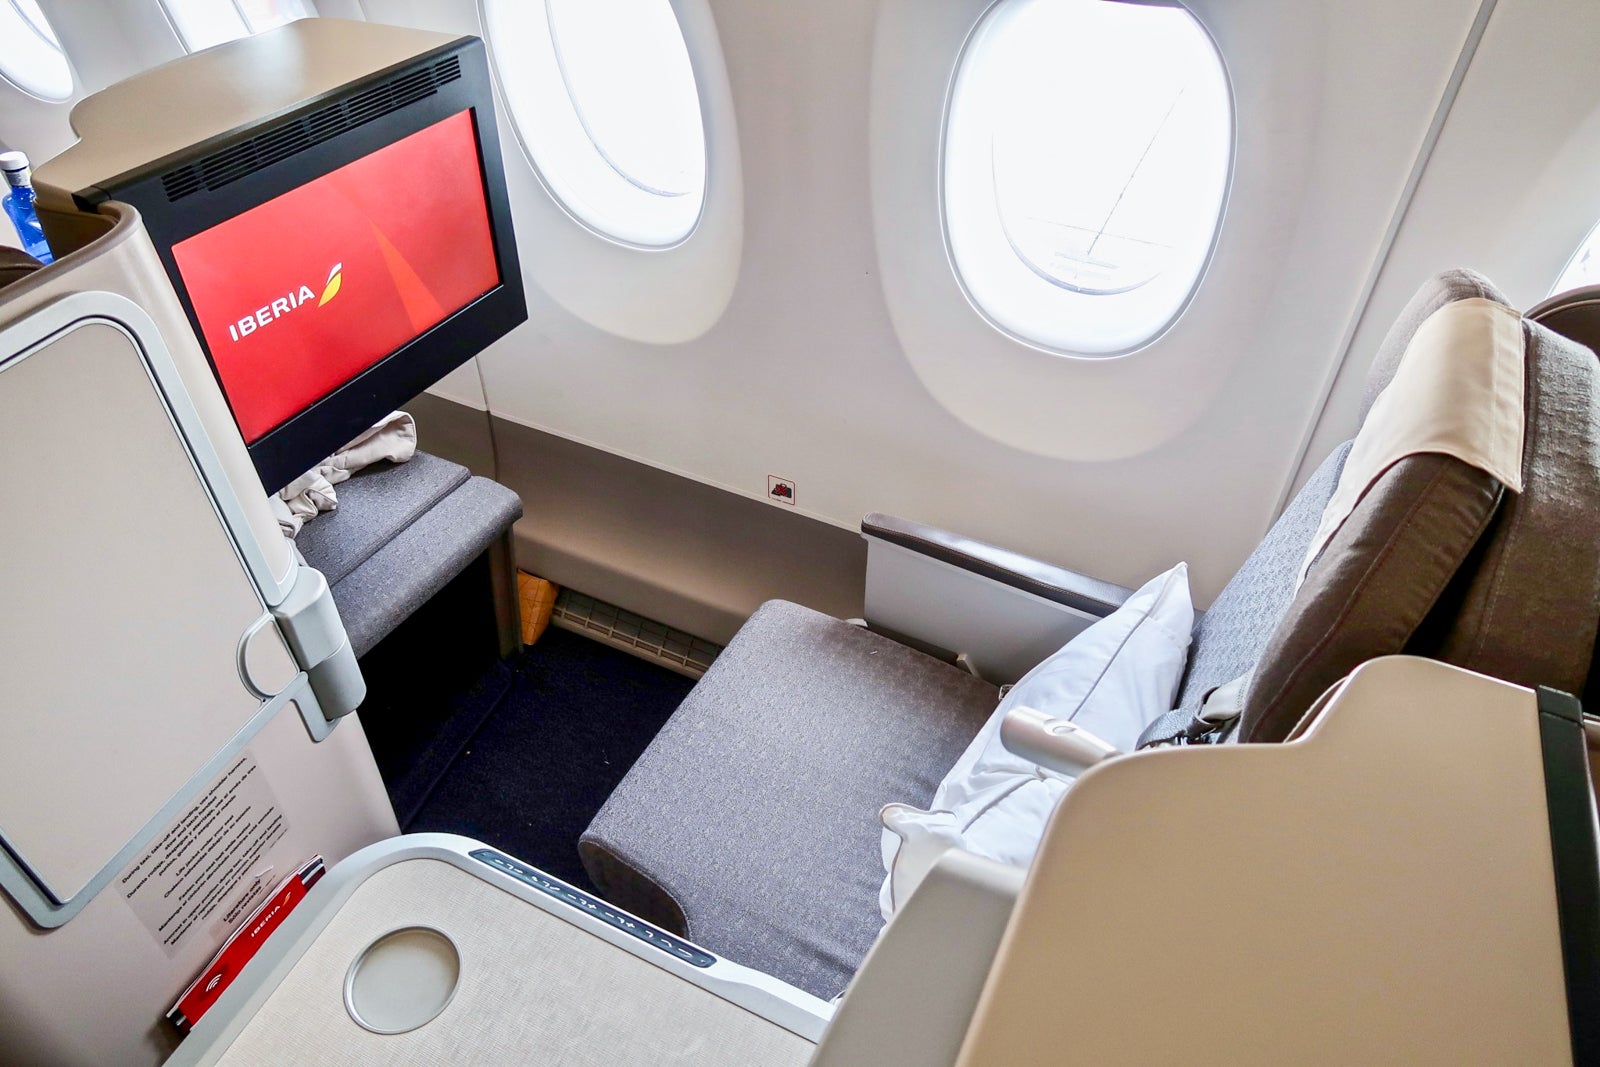 Iberia A350 lie-flat business class seat